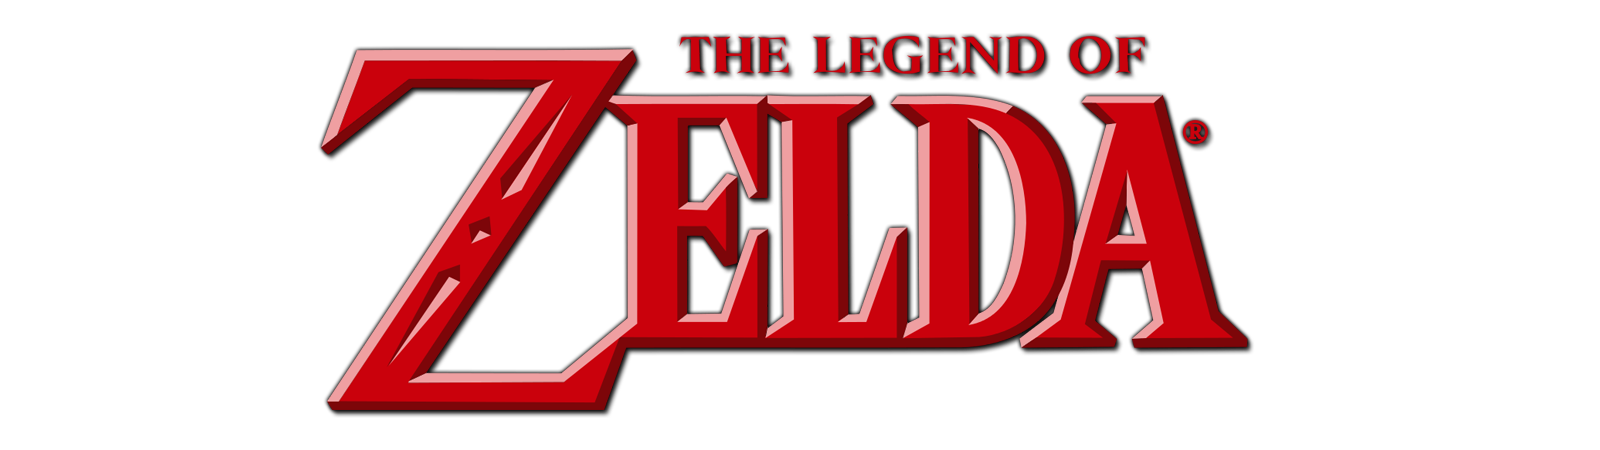 Figuras The Legend Of Zelda